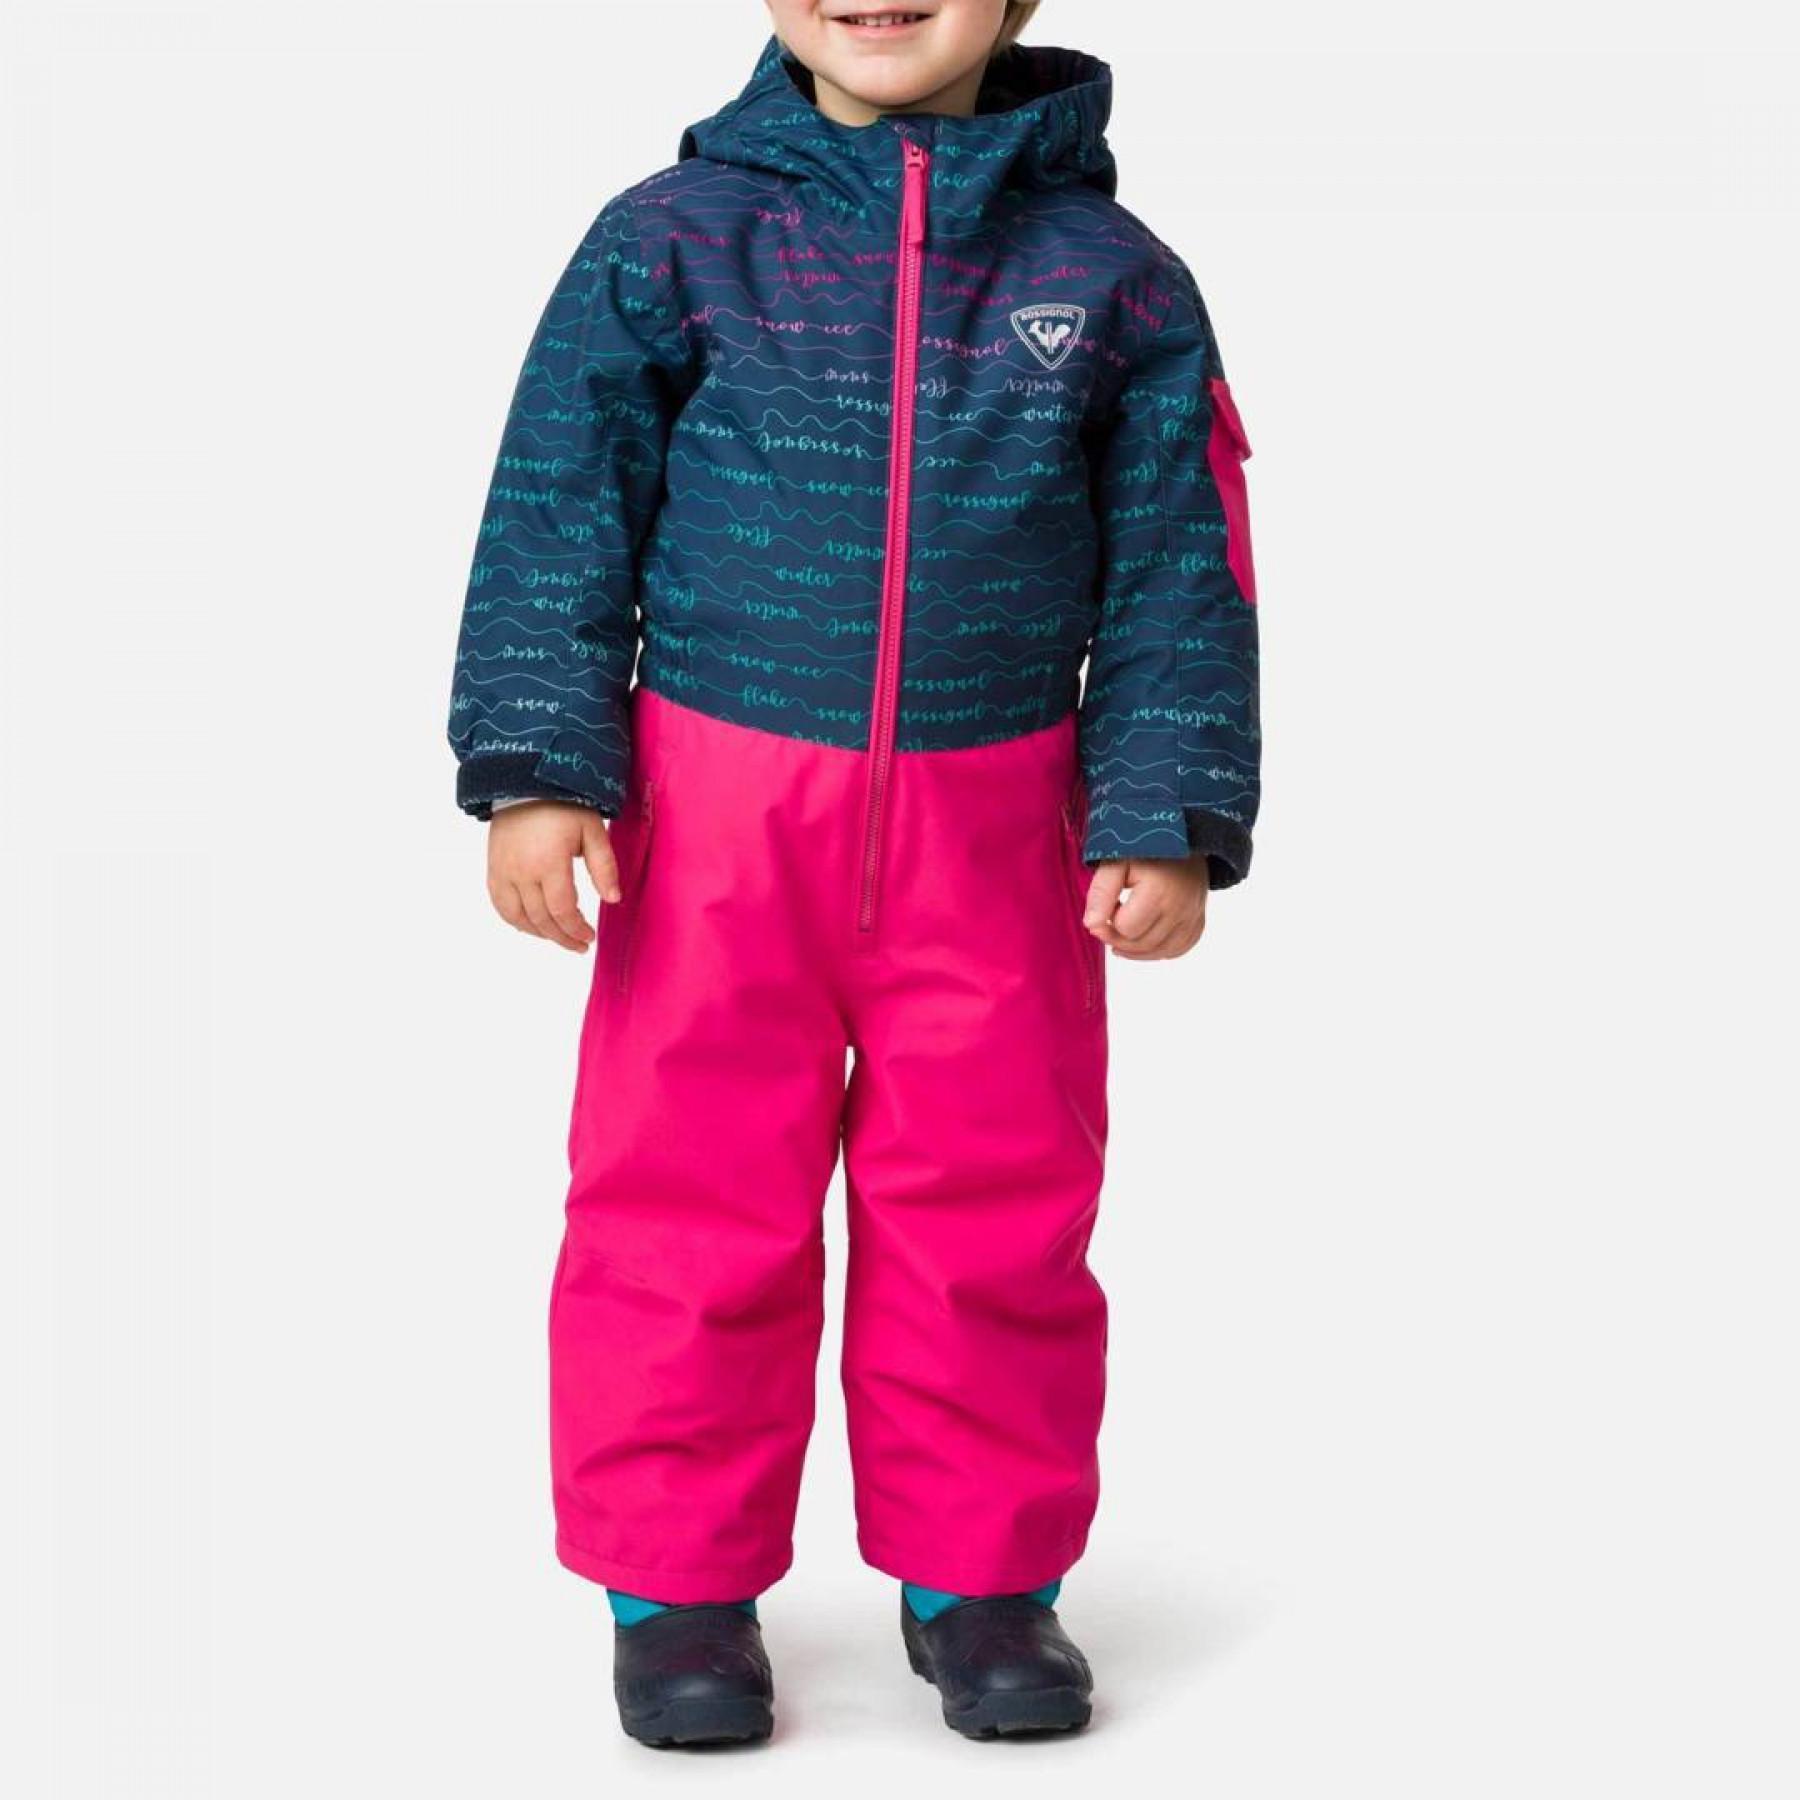 Children's ski suit Rossignol Flocon